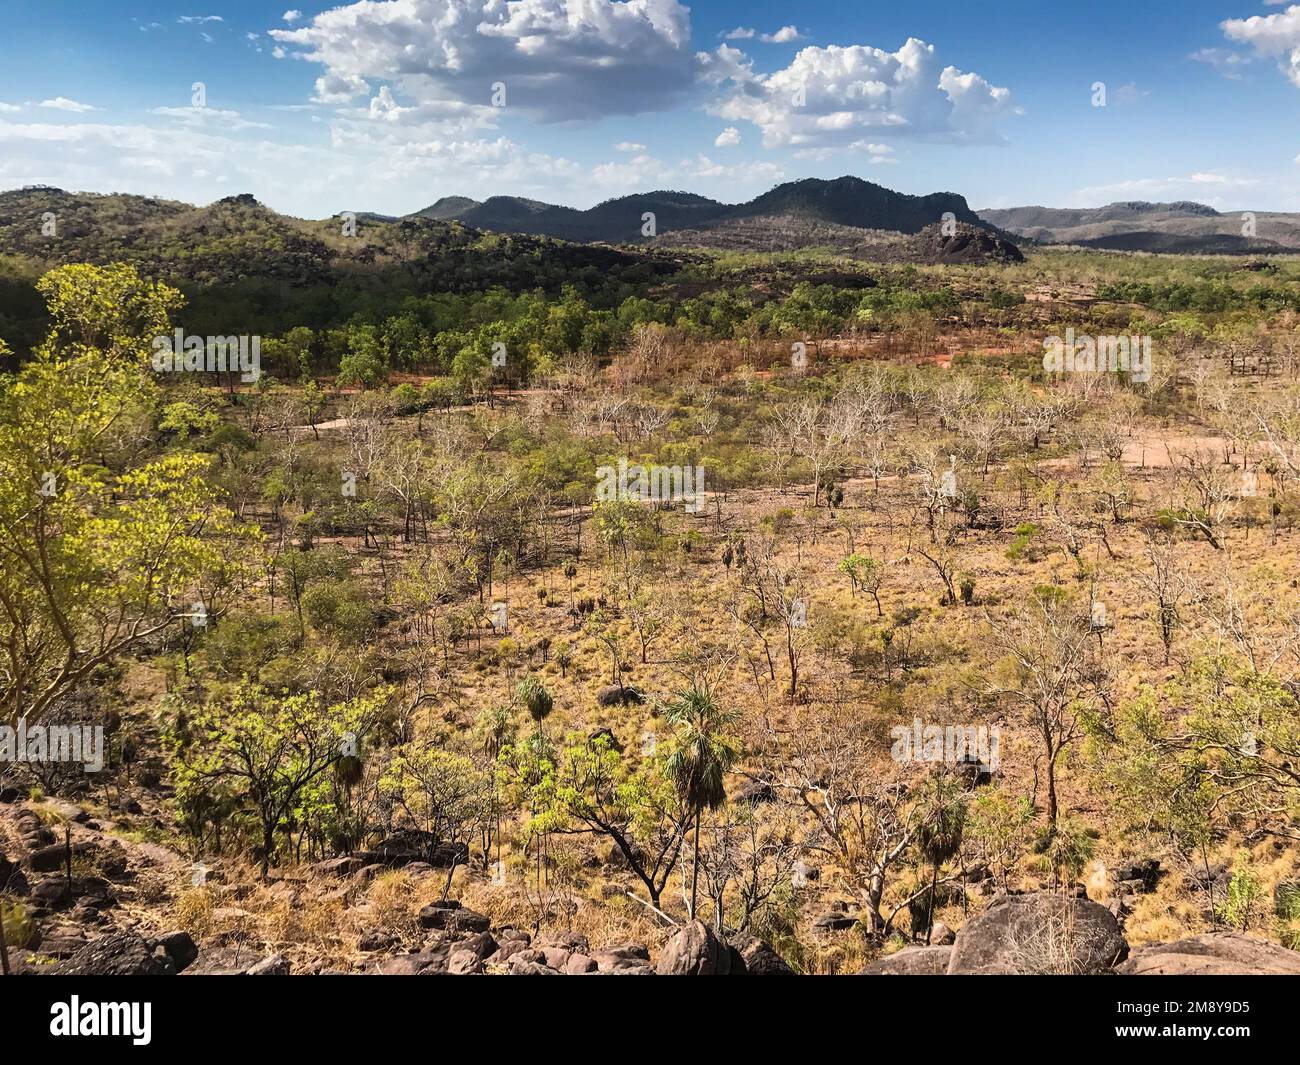 Vue depuis le point de vue de Yurmikmik, parc national de Kakadu, territoire du Nord, Australie Banque D'Images